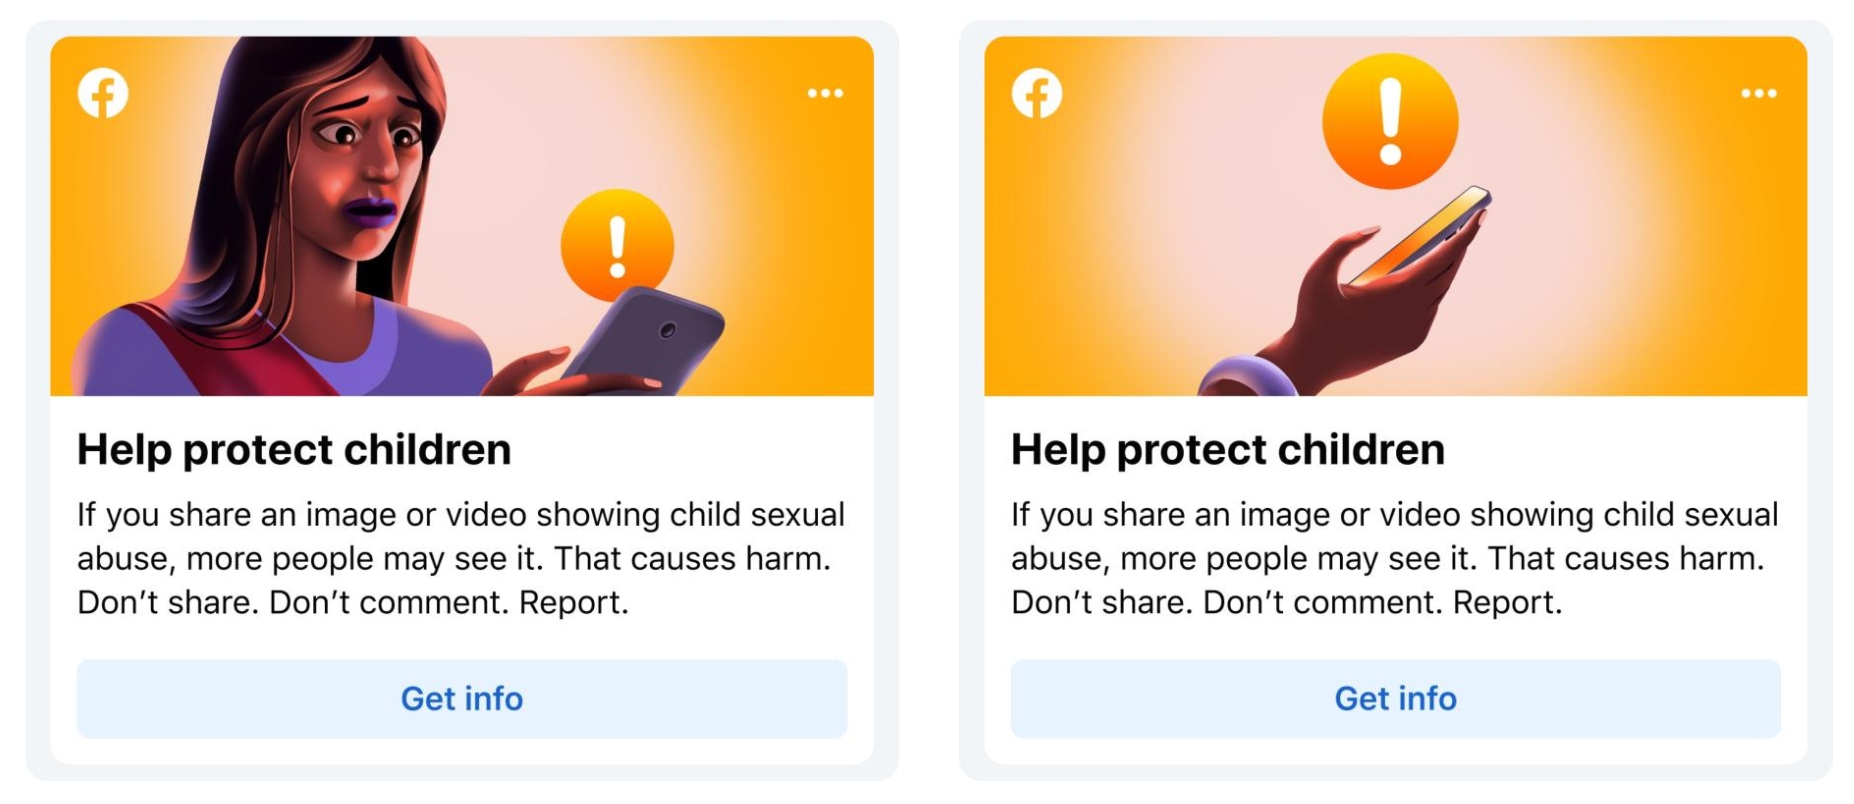 1674631213 322 Meta implementa nuevas herramientas de proteccion a menores en Instagram - Meta implementa nuevas herramientas de protección a menores en Instagram y Facebook